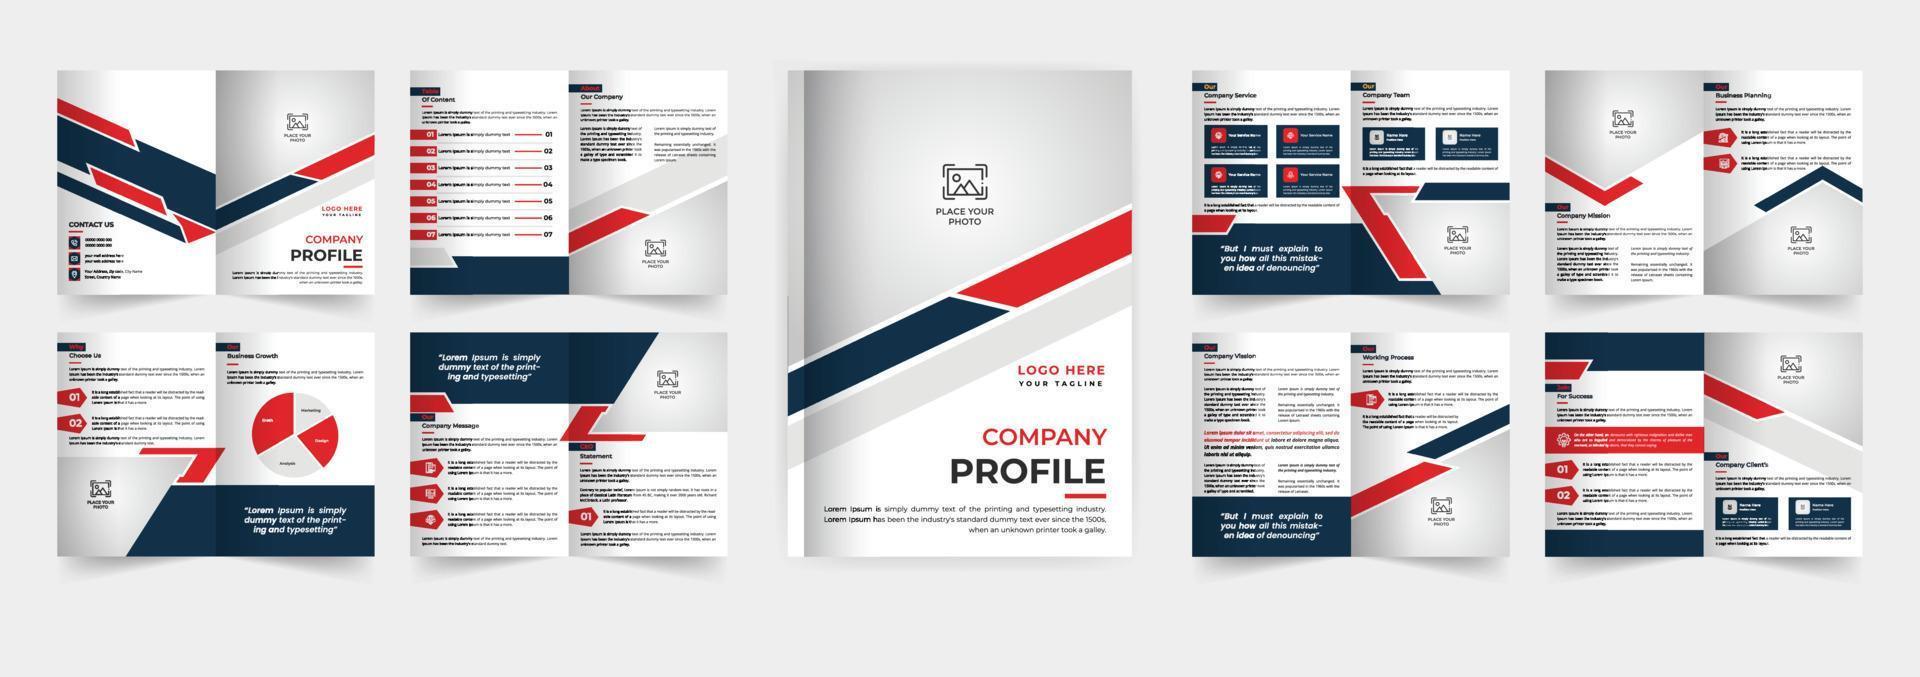 diseño de plantilla de folleto de perfil de empresa plantilla de folleto comercial de varias páginas vector